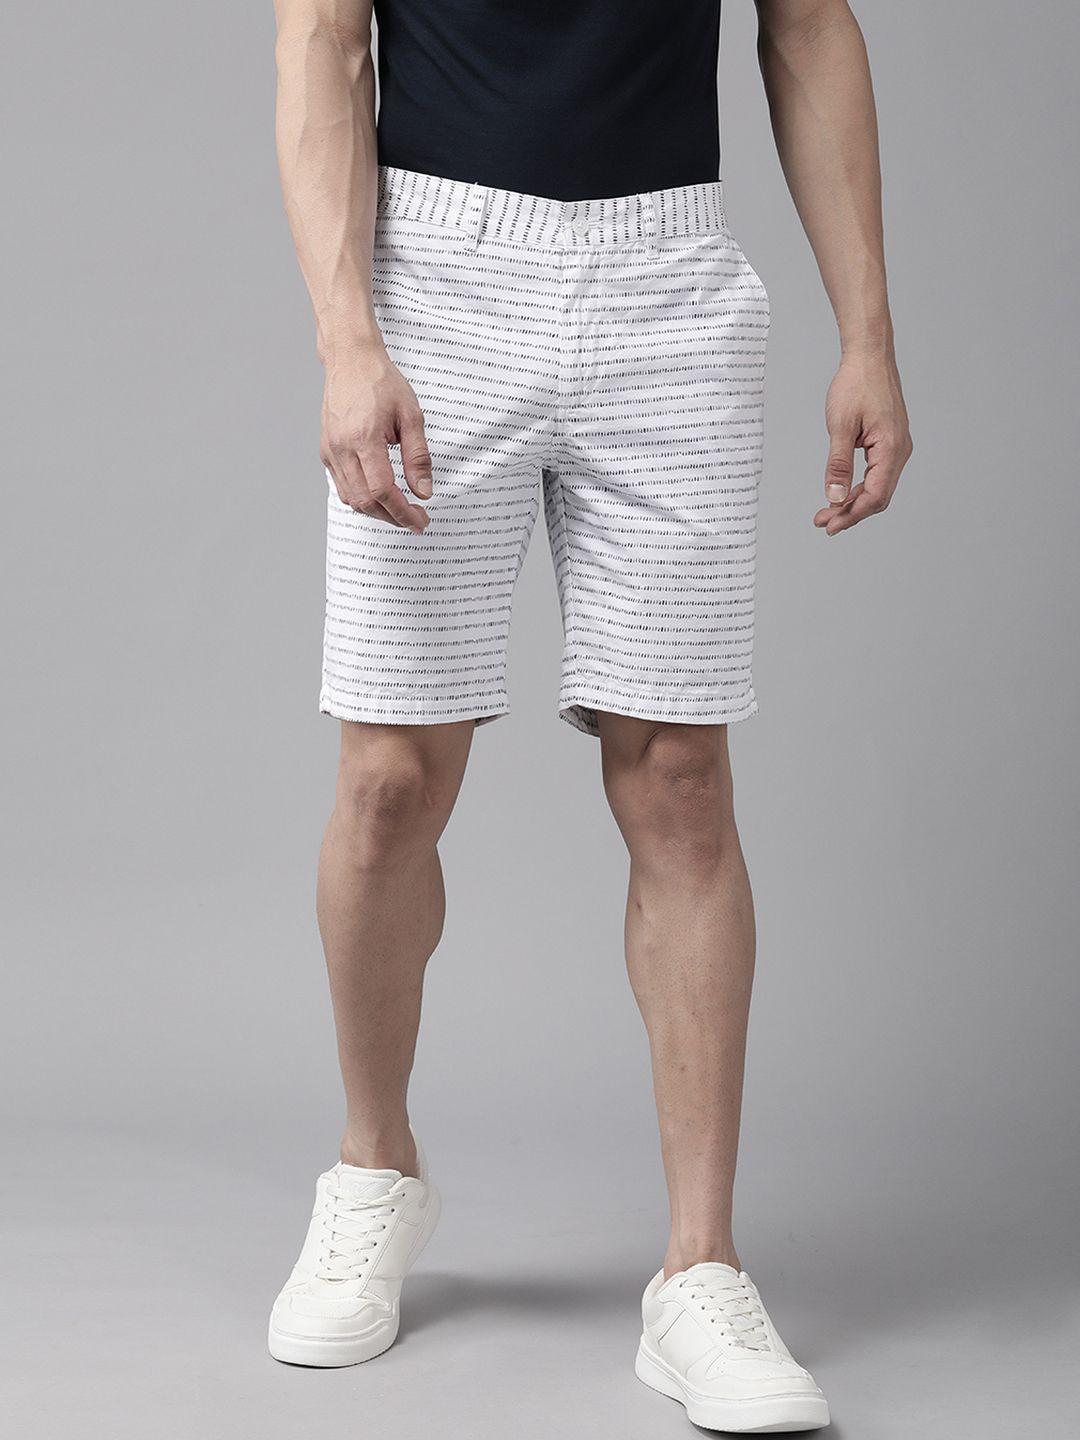 blackberrys men pure cotton printed slim fit shorts